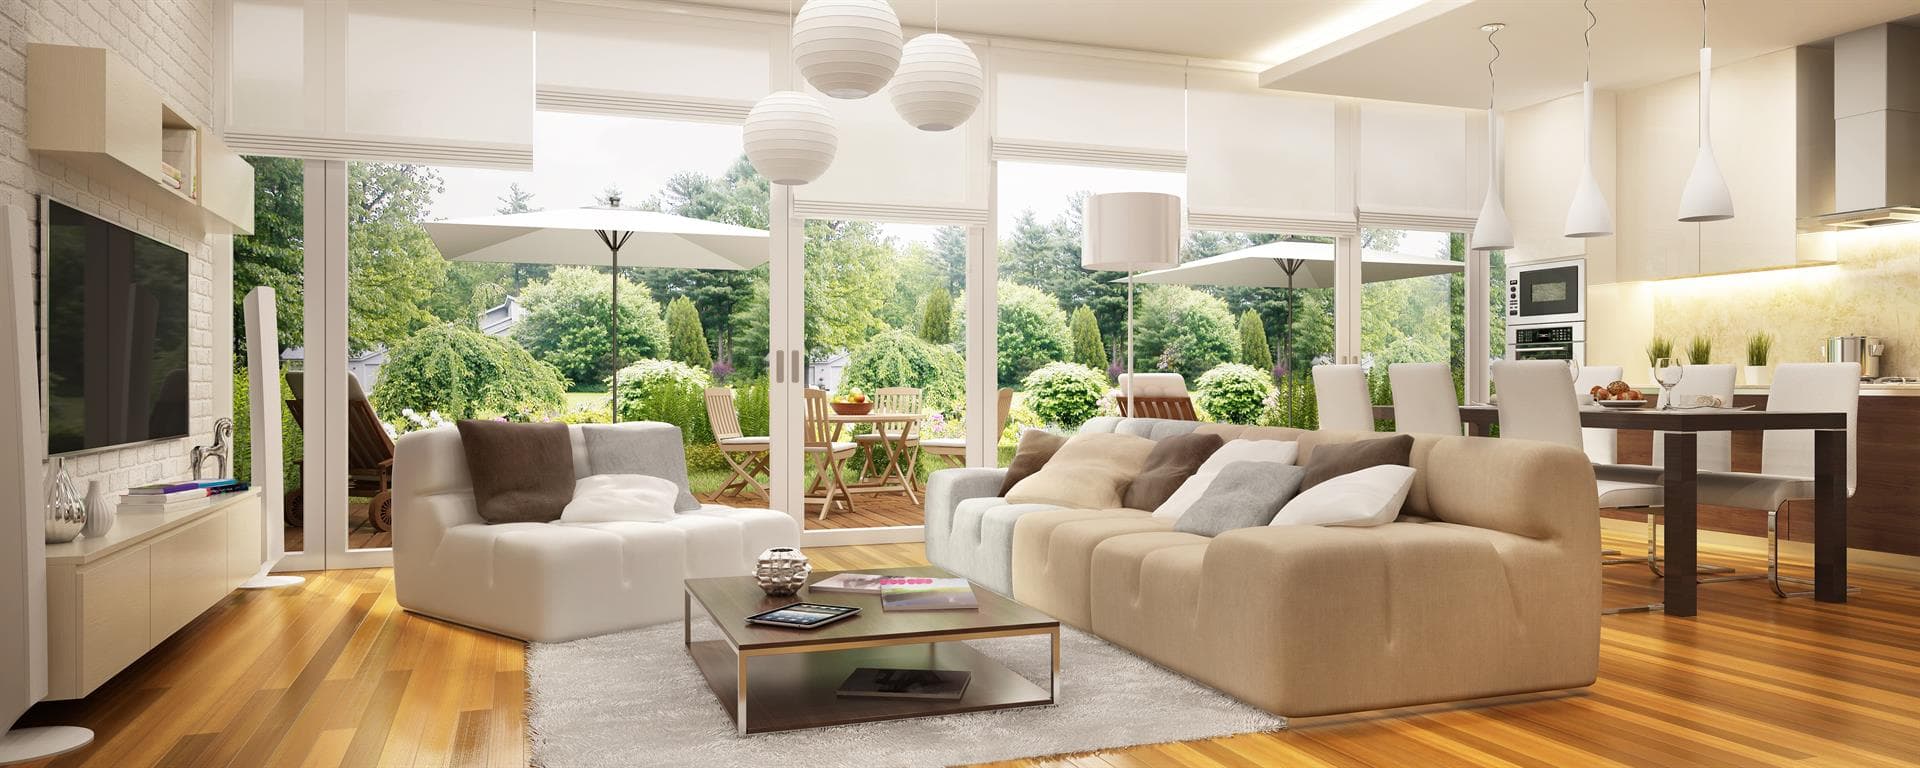 ¿Estás pensando en renovar el mobiliario de tu casa?